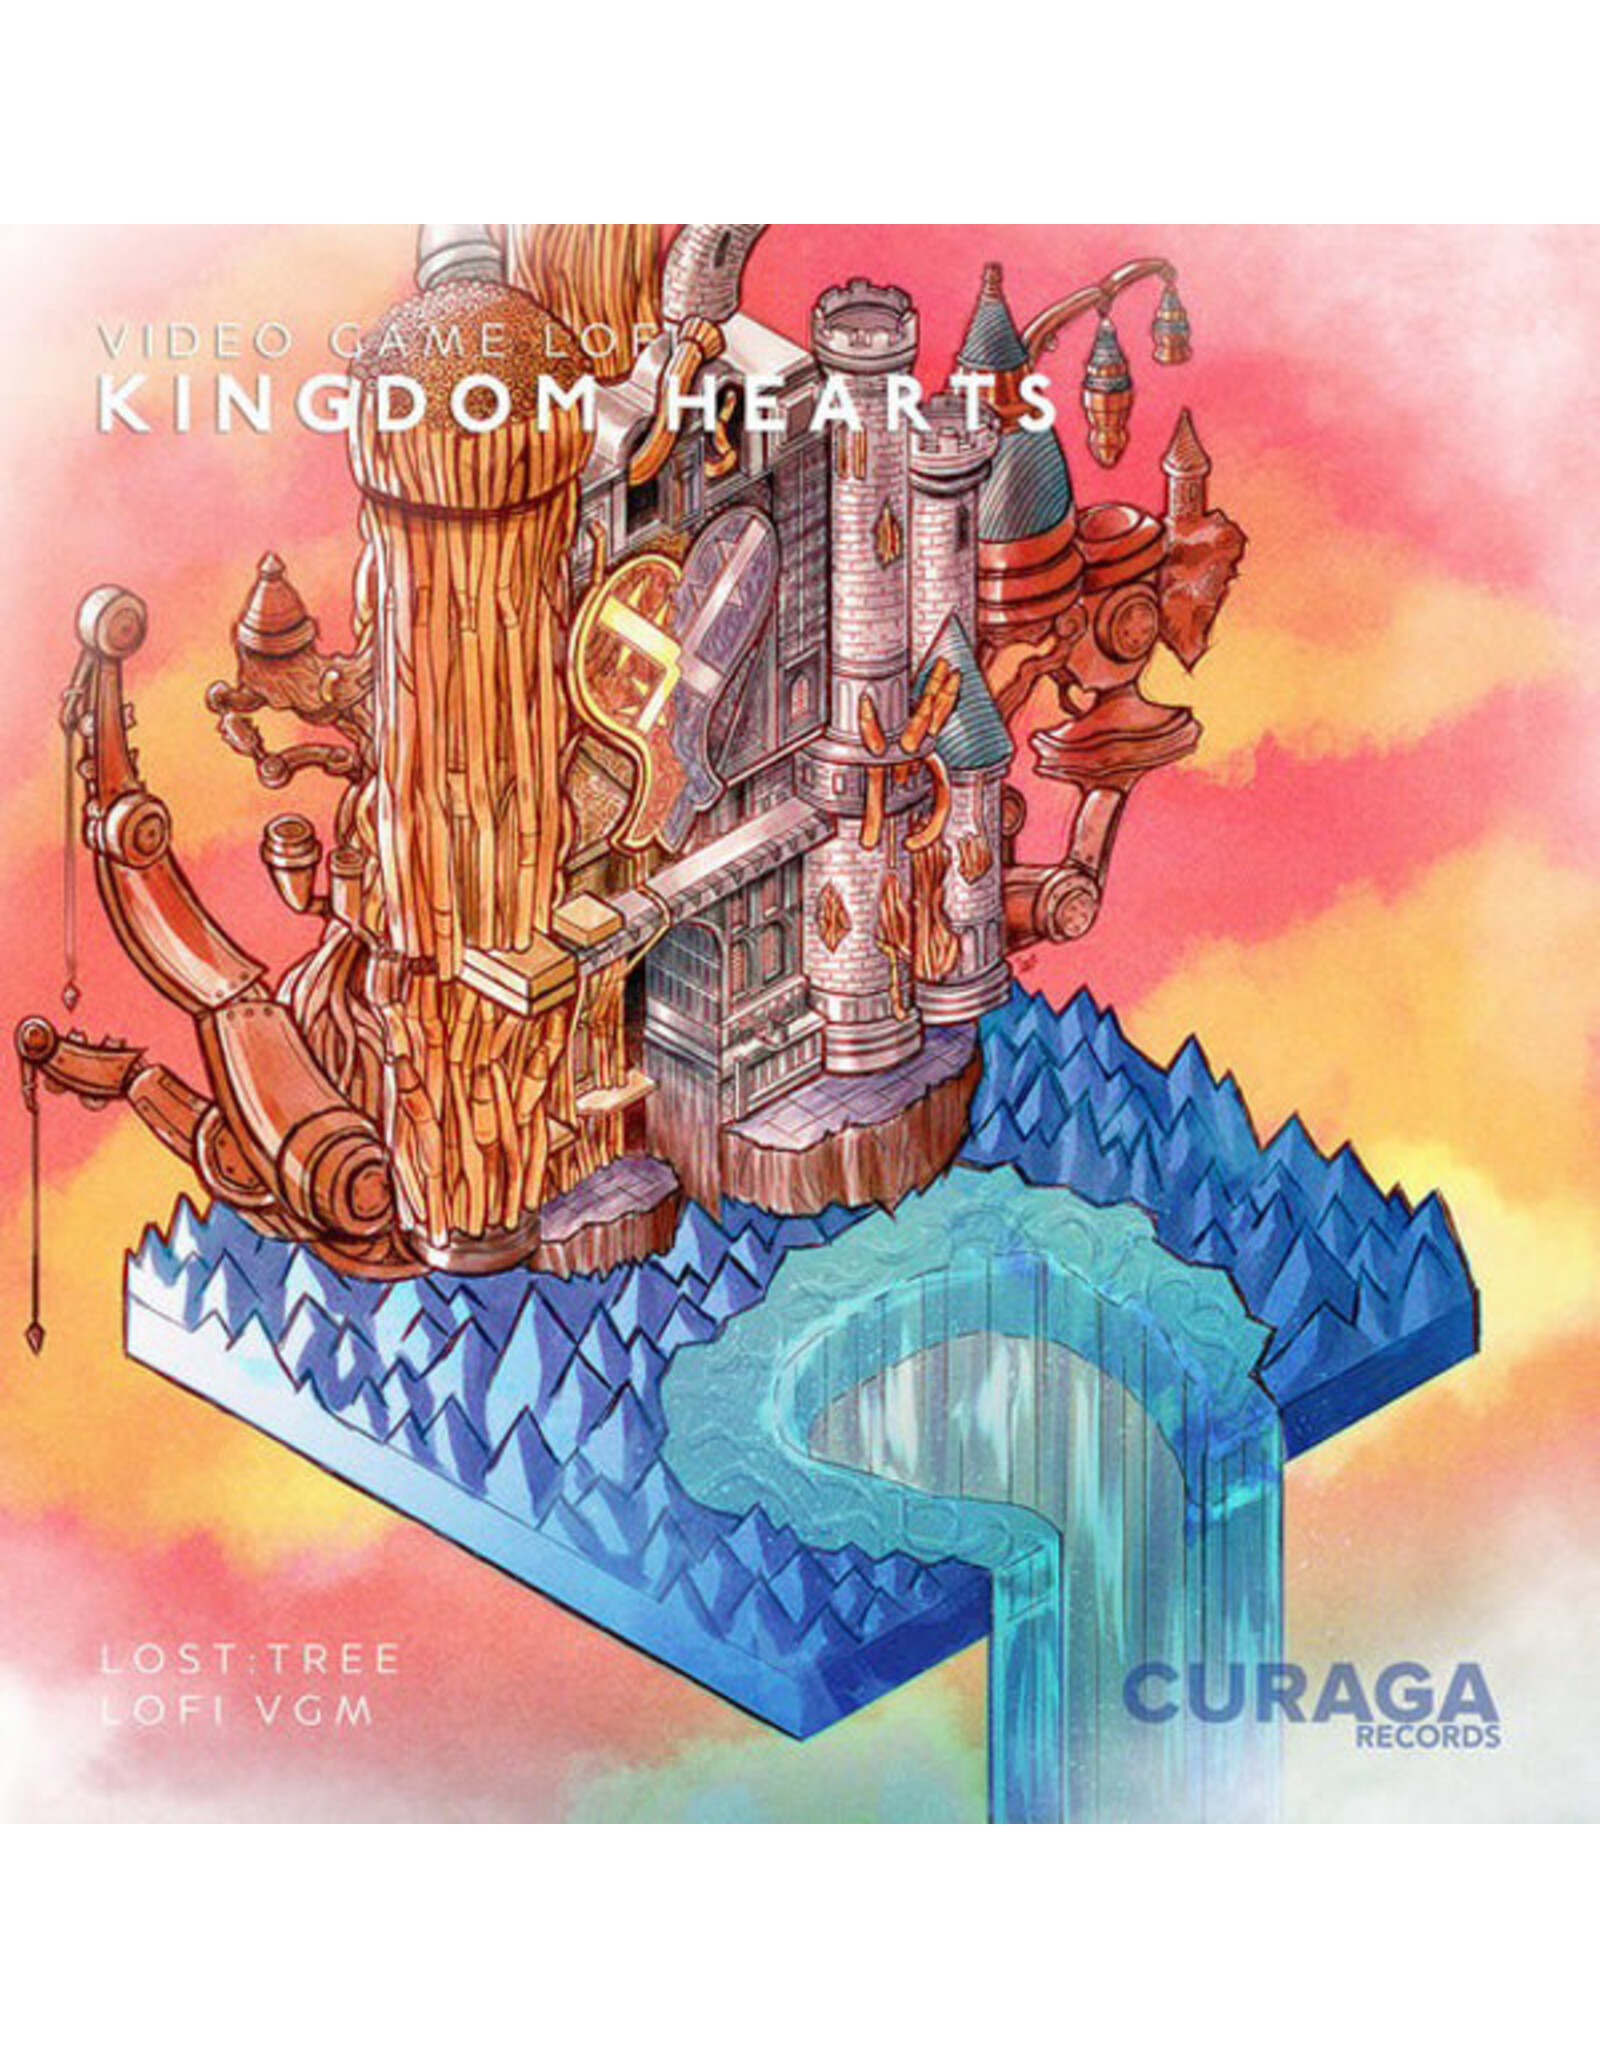 Curaga Records Video Game Lofi: Kingdom Hearts